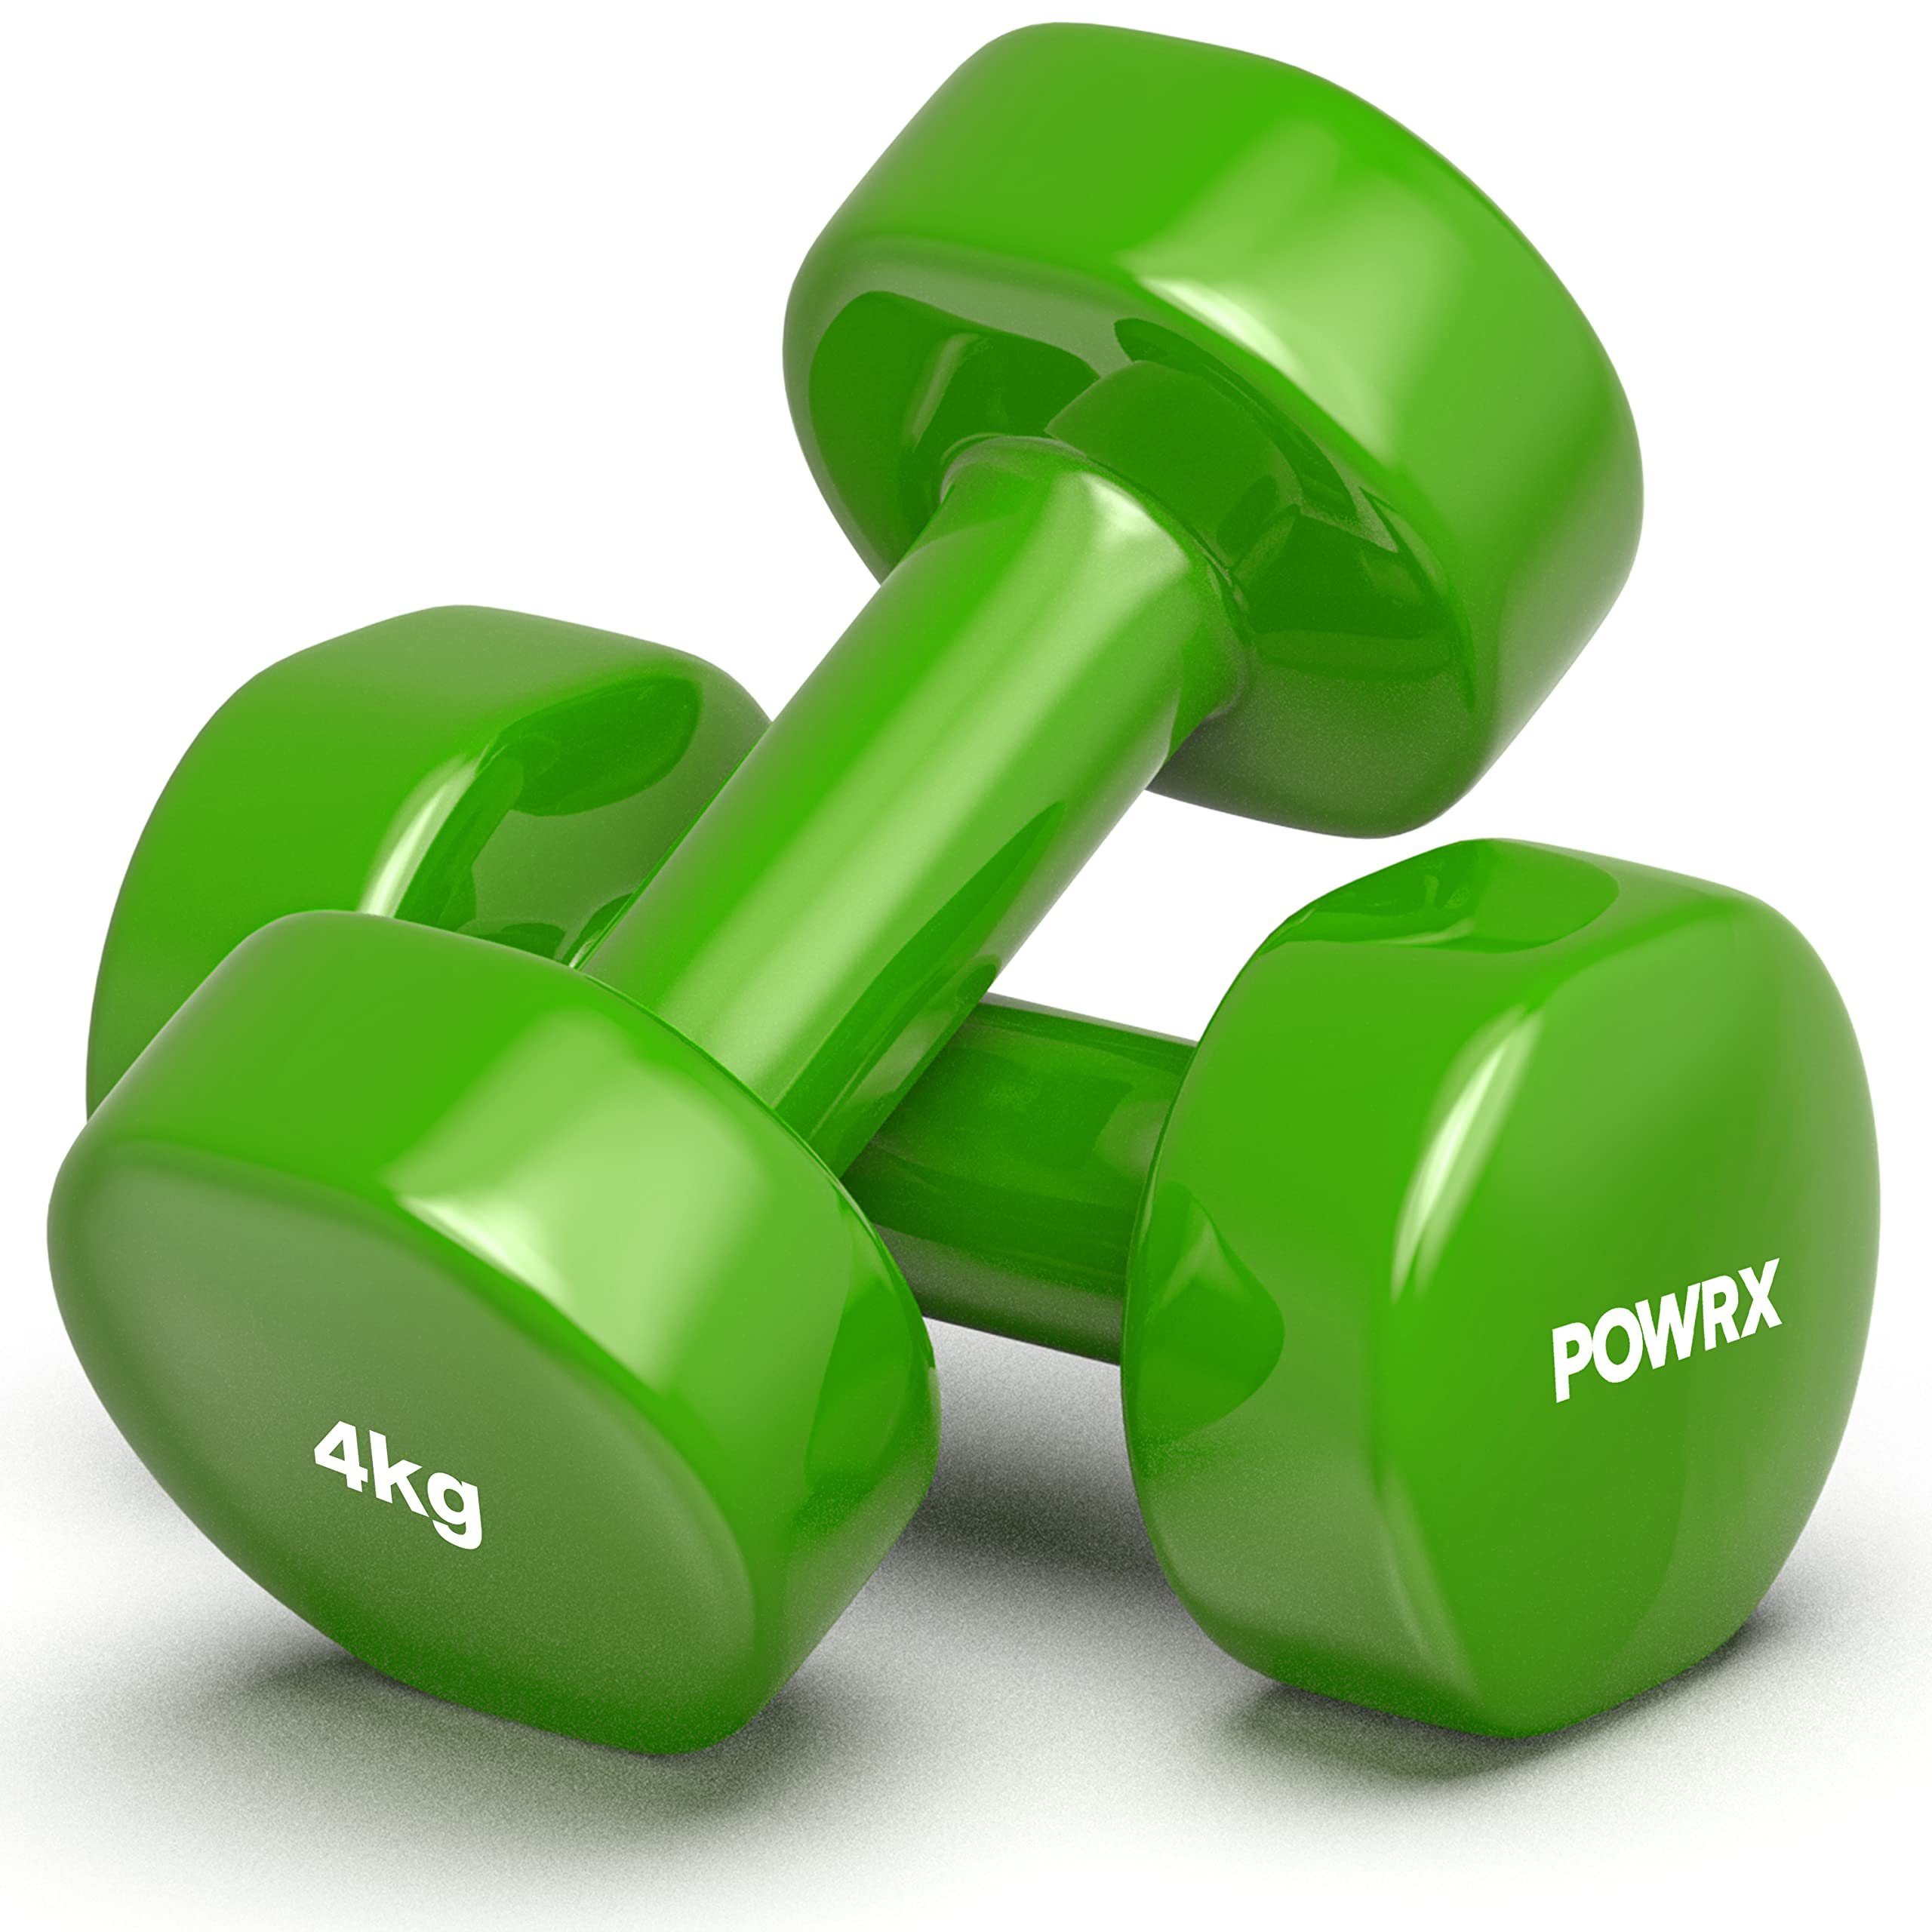 POWRX Gymnastikhantel Vinyl-Hanteln Paar (2 x 4kg, grün) Gymnastik/Aerobic/Pilates 0,5-10kg, Grn (2X4Kg)